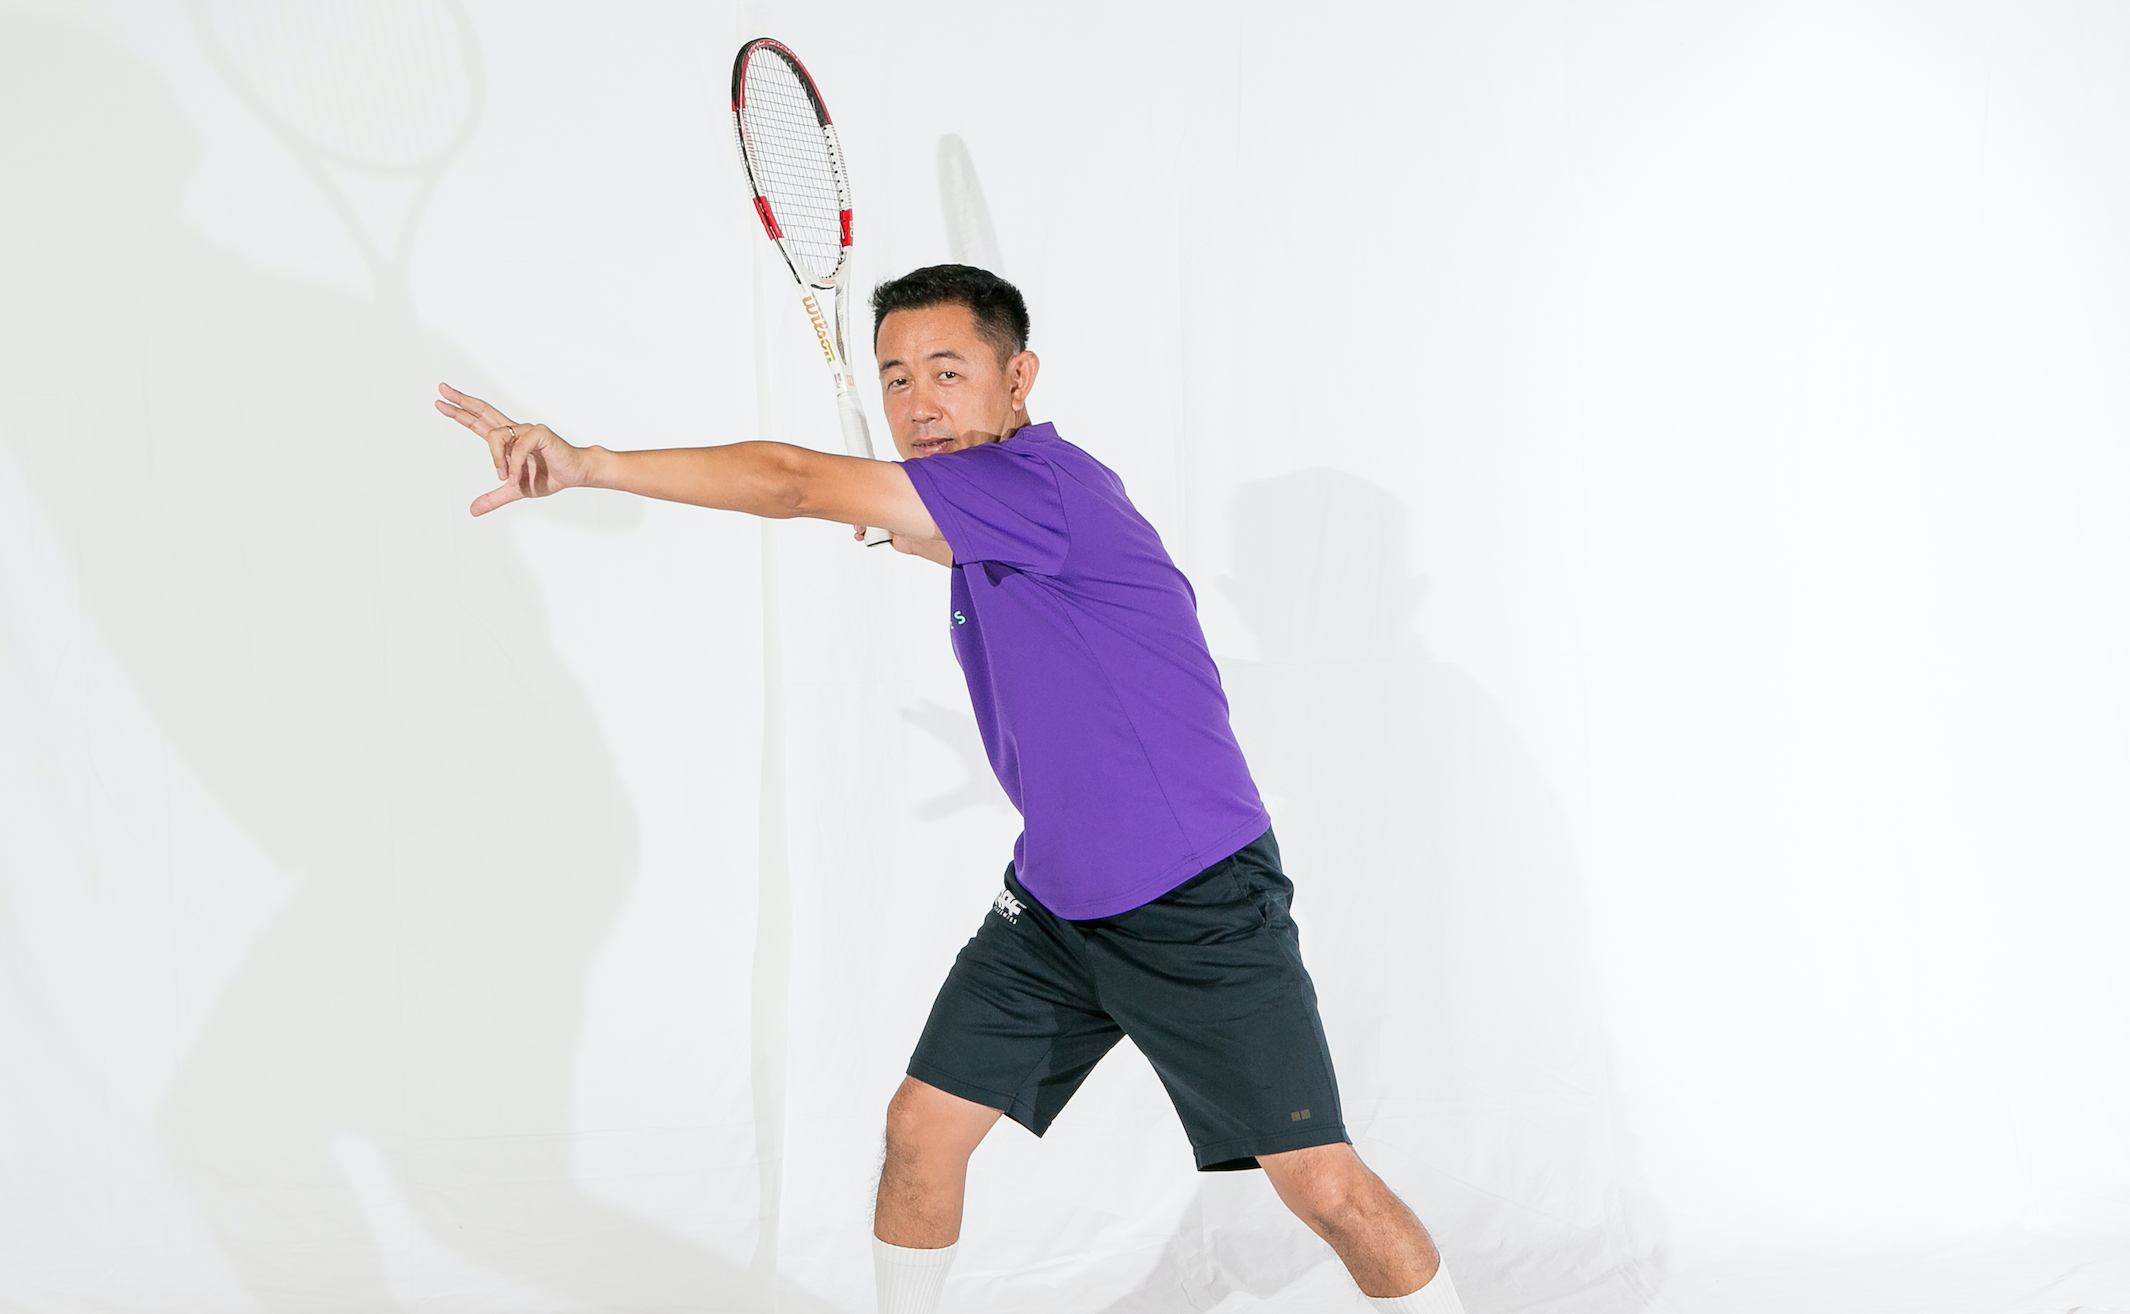 テニス初心者 基本ショット フォアハンドストロークの打ち方 Apf Academies